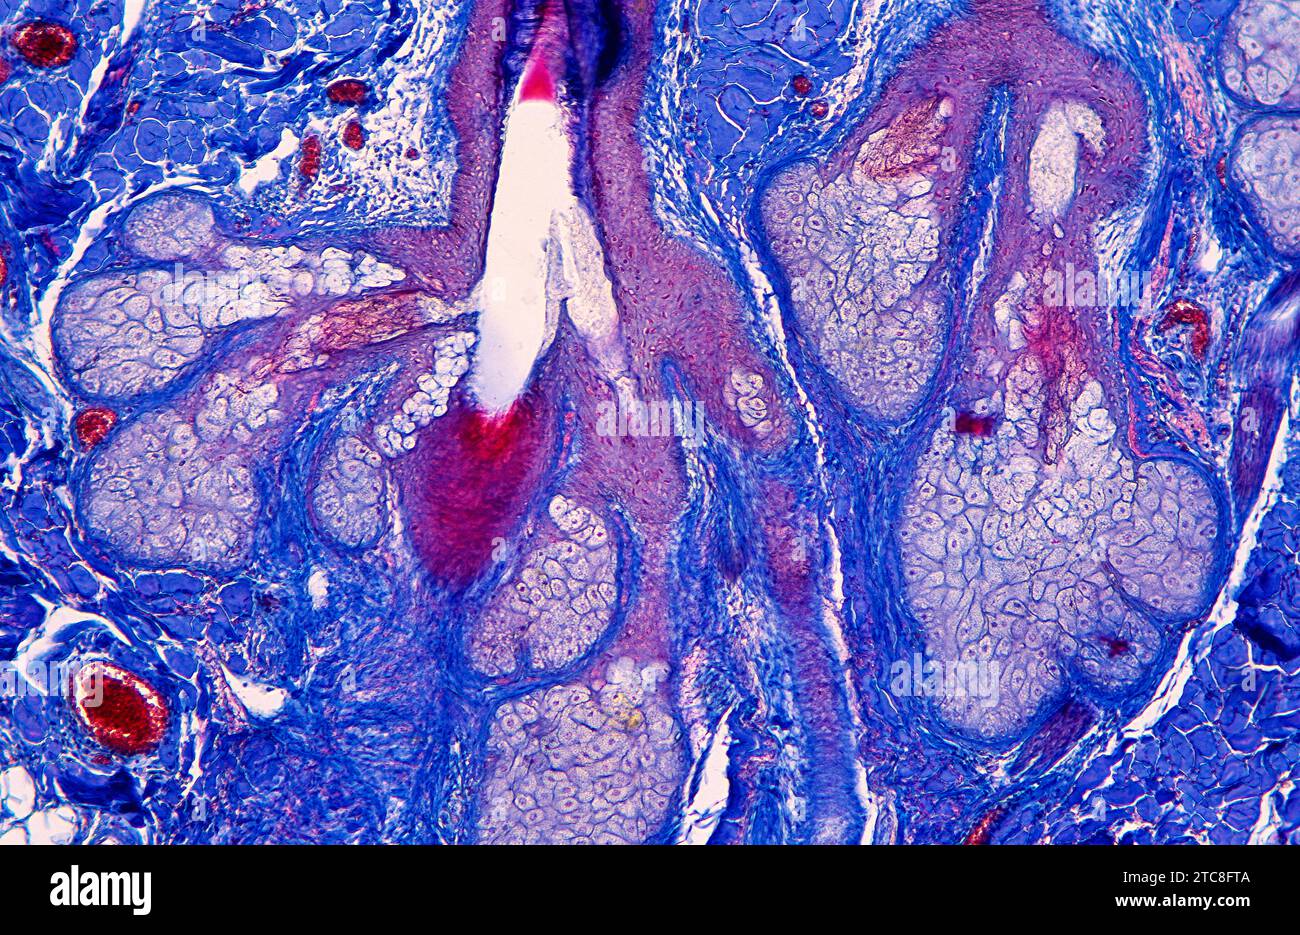 Pelle umana che mostra ghiandole sebacee. Sezione longitudinale. Microscopio ottico, ingrandimento X100. Foto Stock